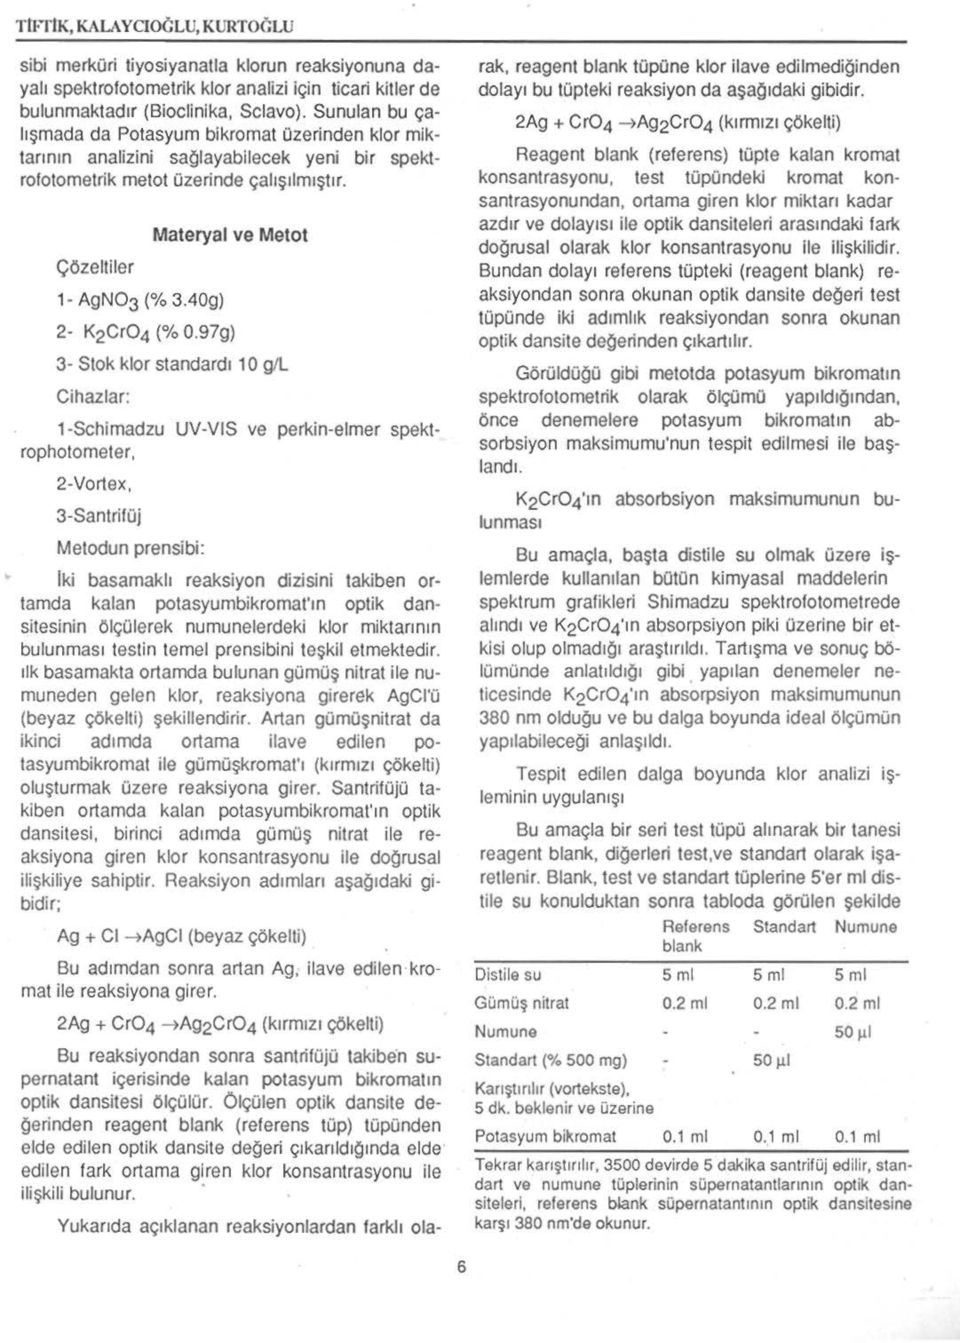 40g) Materyal ve Metot 2- K2Cr04 (% 0.